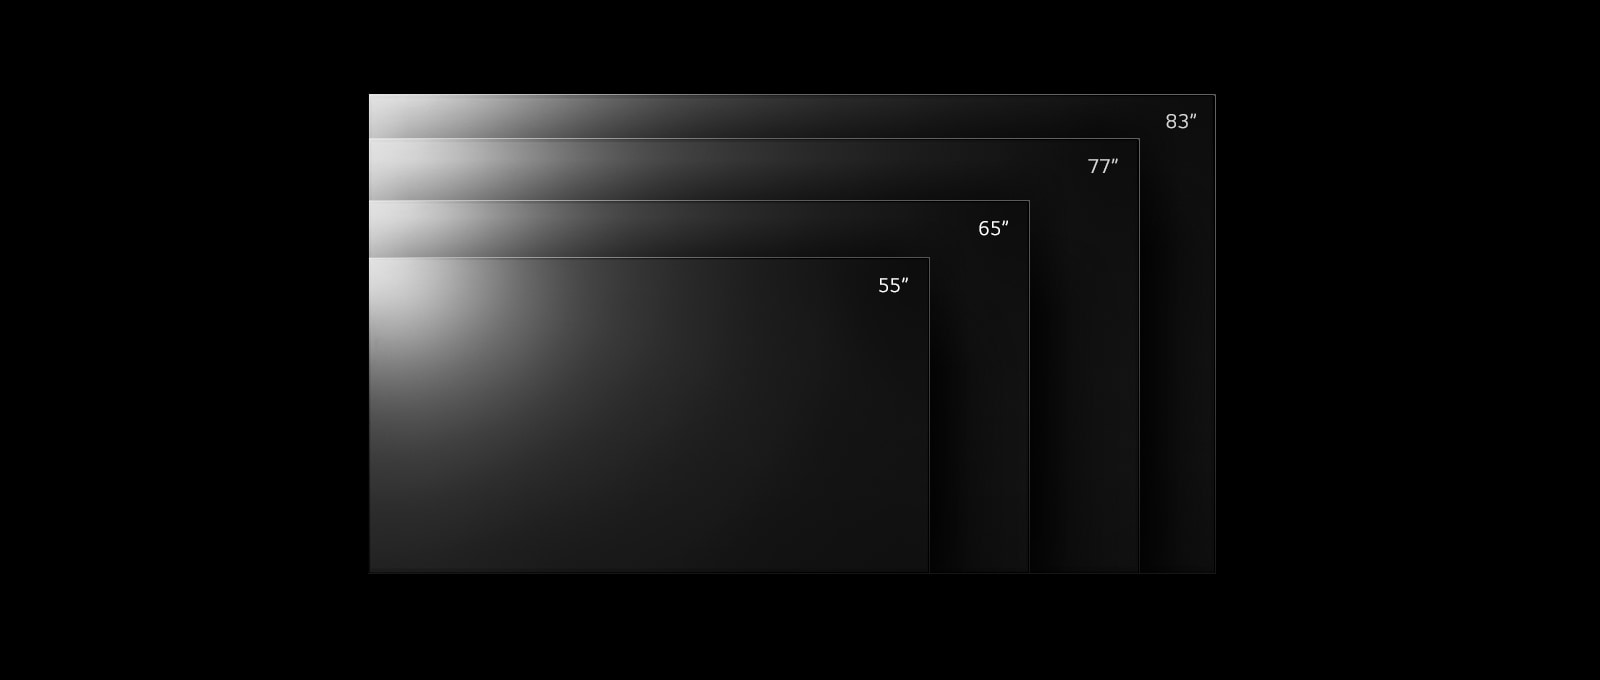 Rad televízorov LG OLED G2 v rôznych veľkostiach od 55 do 83 palcov